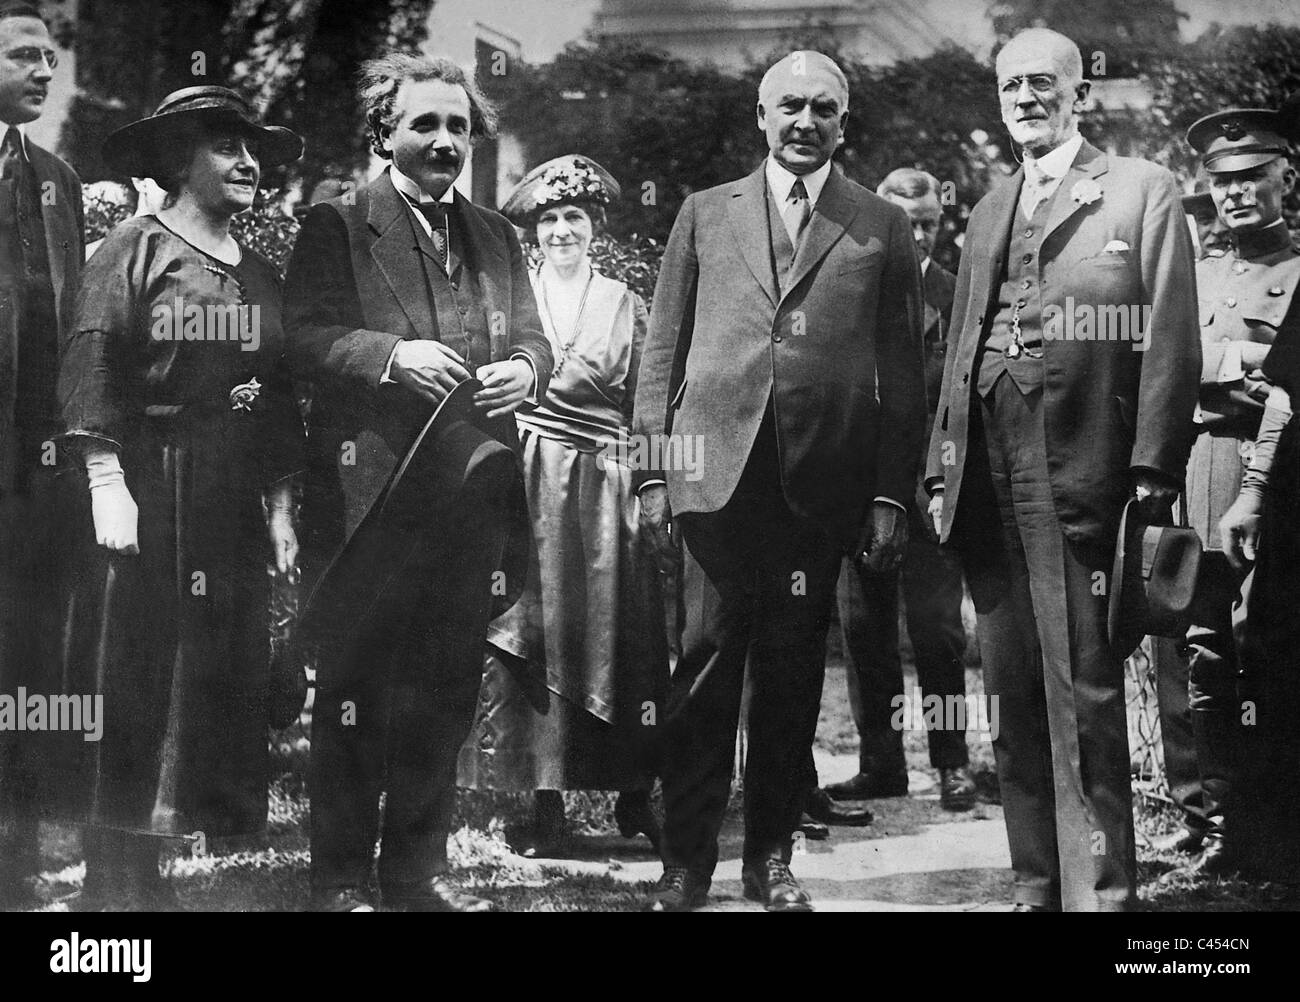 Albert Einstein und Warren g. Harding, 1921 Stockfoto